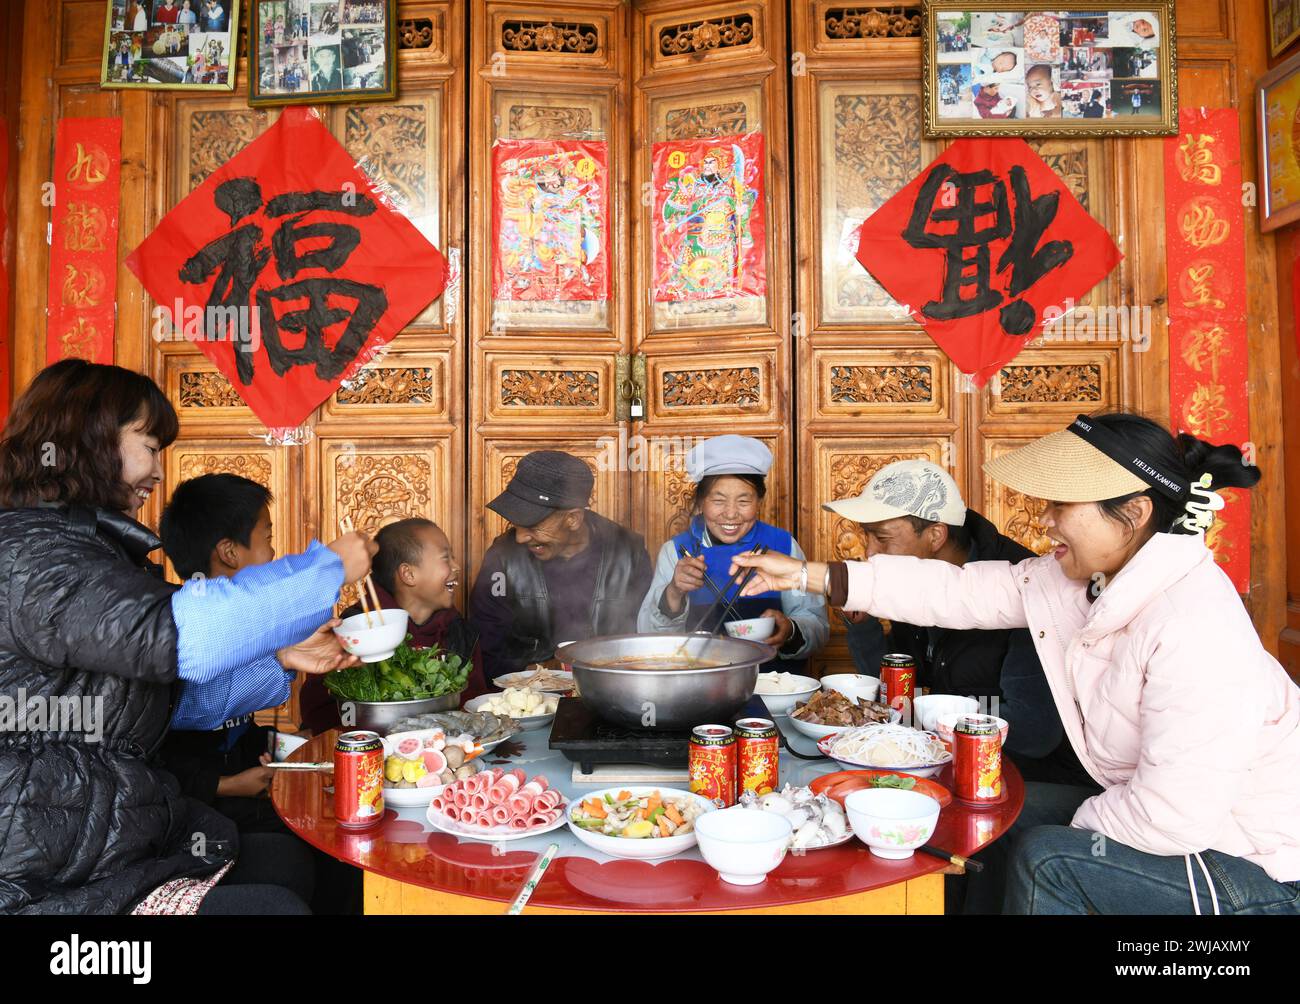 Peking, chinesische Provinz Yunnan. Februar 2024. Eine einheimische Familie genießt ihr Abendessen im Dorf Wenping im Bezirk Jianchuan in der Autonomen Präfektur Dali Bai, südwestchinesische Provinz Yunnan, 13. Februar 2024. Die Menschen im ganzen Land tauchten in die festliche Atmosphäre des chinesischen Neujahrs ein, indem sie traditionelle Speisen und lokale Snacks genossen. Quelle: Zhao Qingzu/Xinhua/Alamy Live News Stockfoto